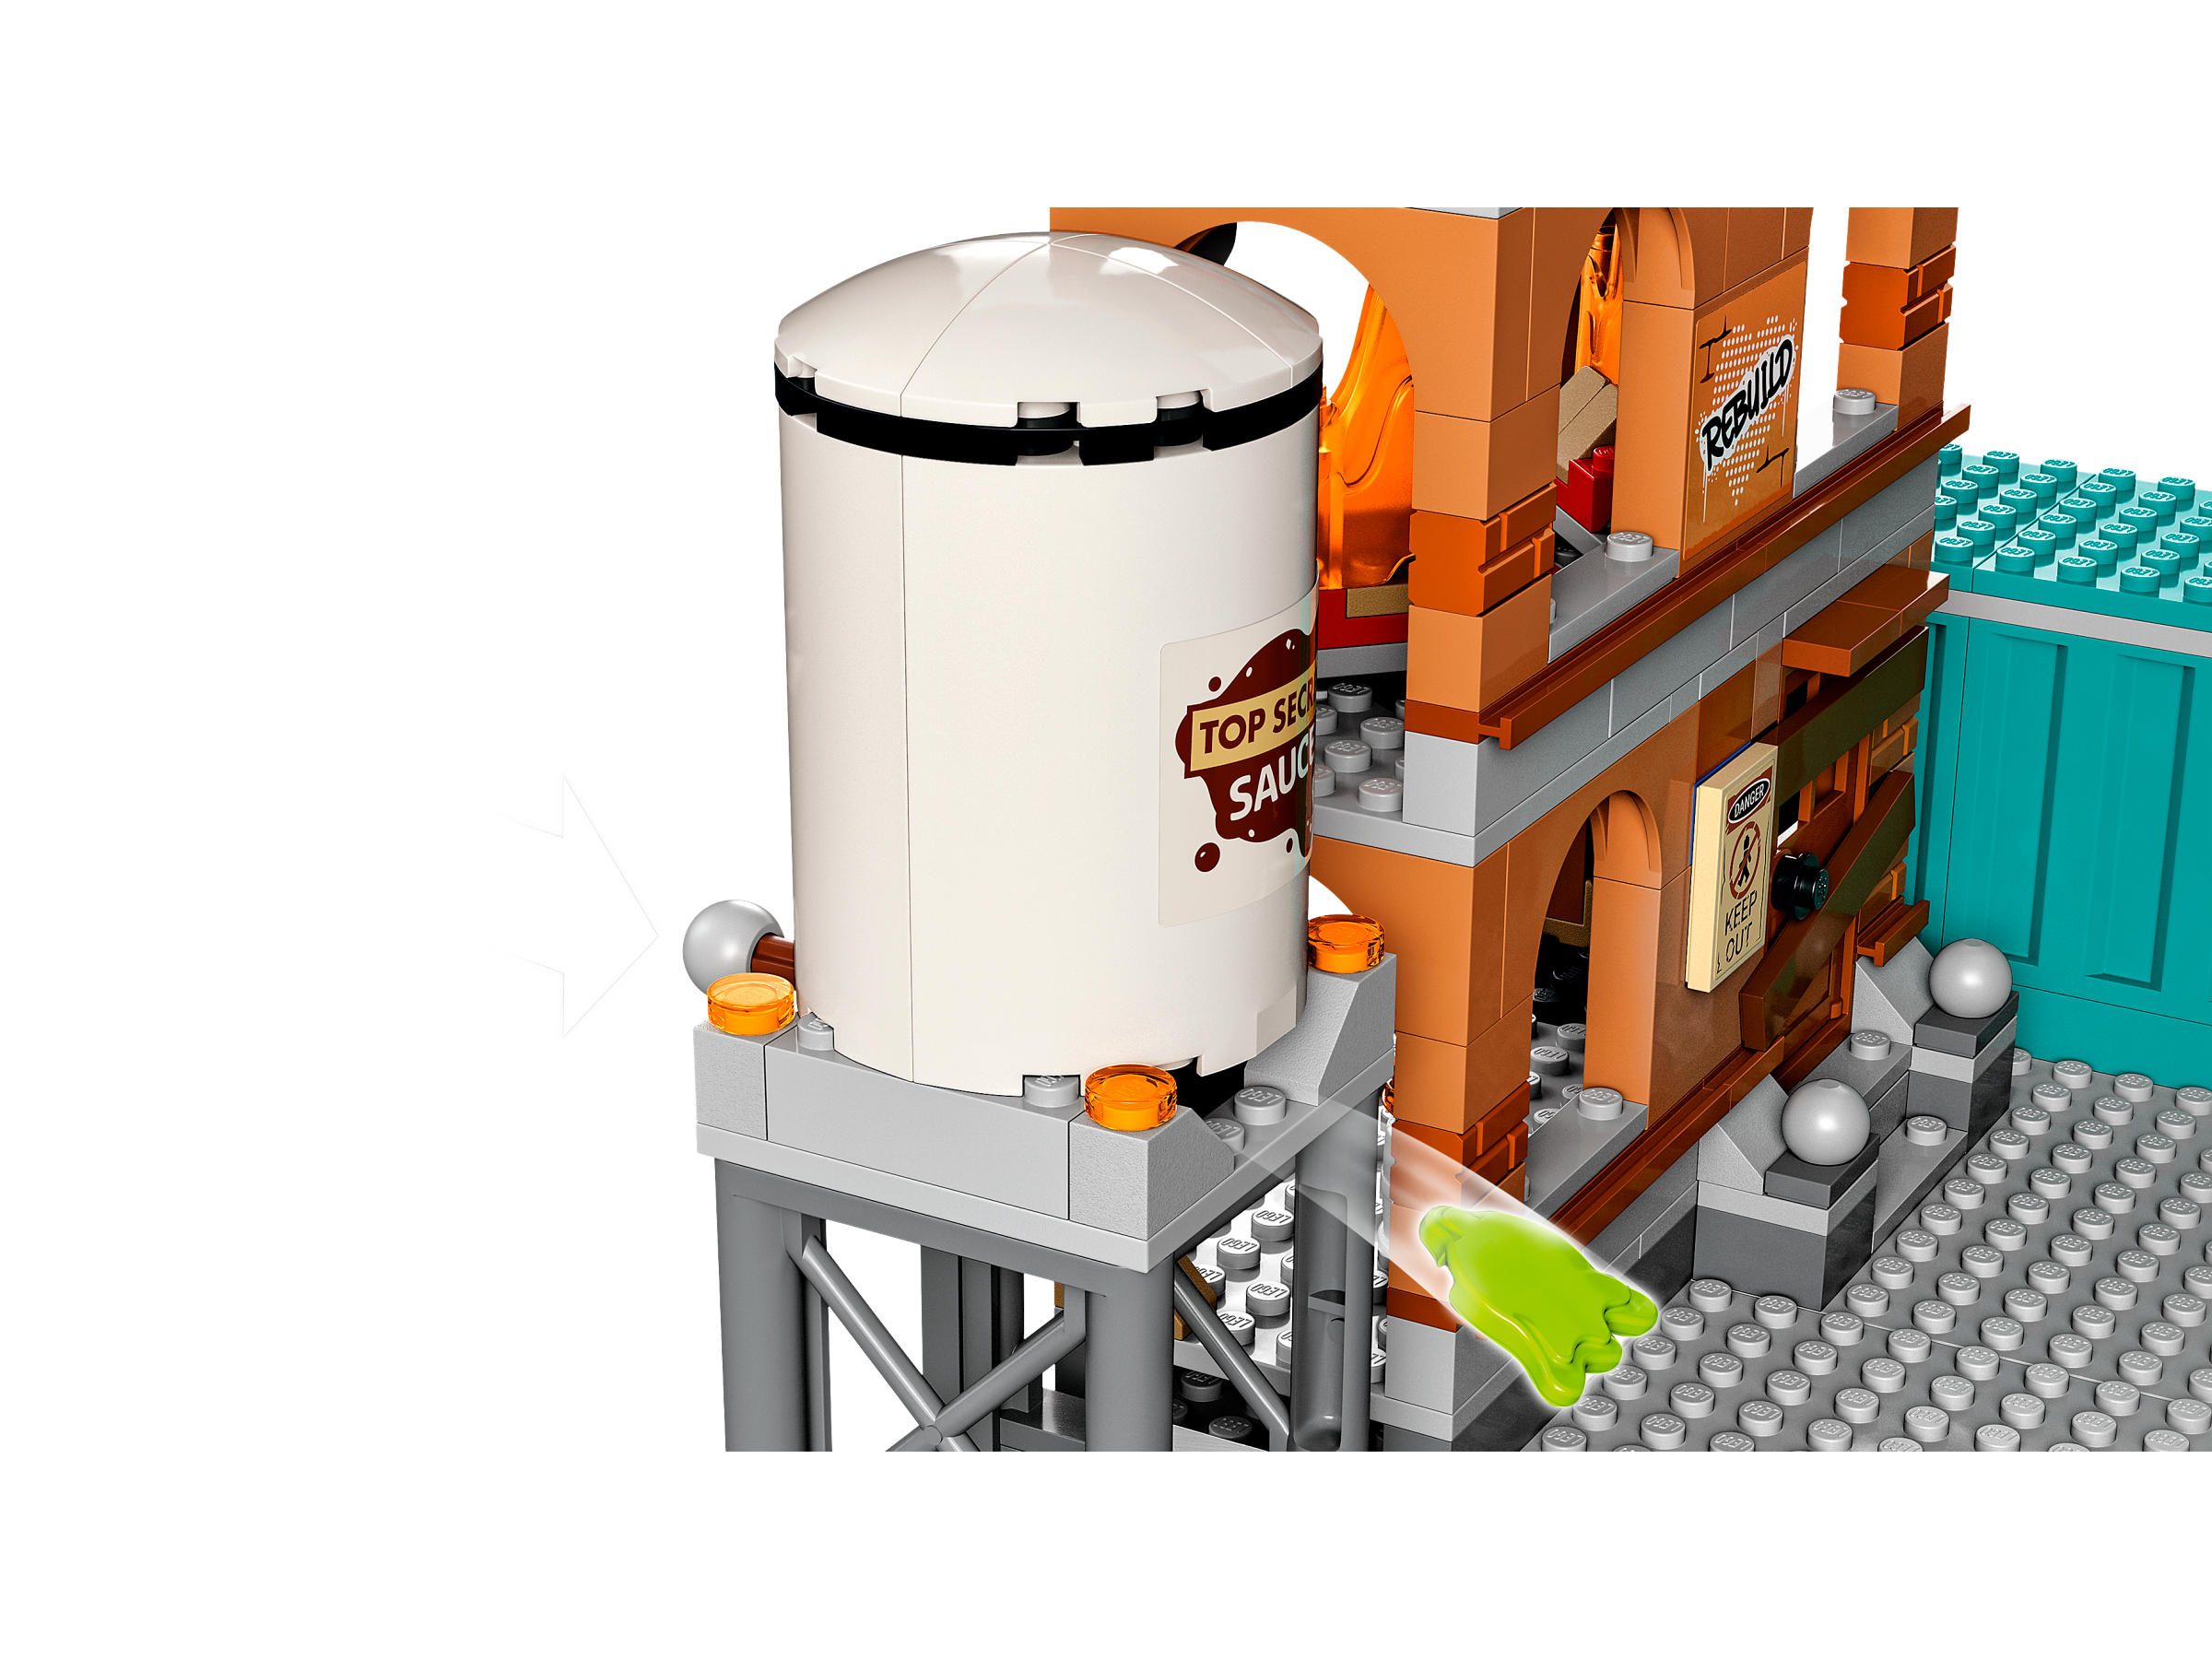 LEGO 60321 City Fire La Brigade Pompiers: Jeu de Construction avec  Minifigurines, Jouet de Camion, Moto et Remorque, Idée Cadeau pour Les  Enfants de 7